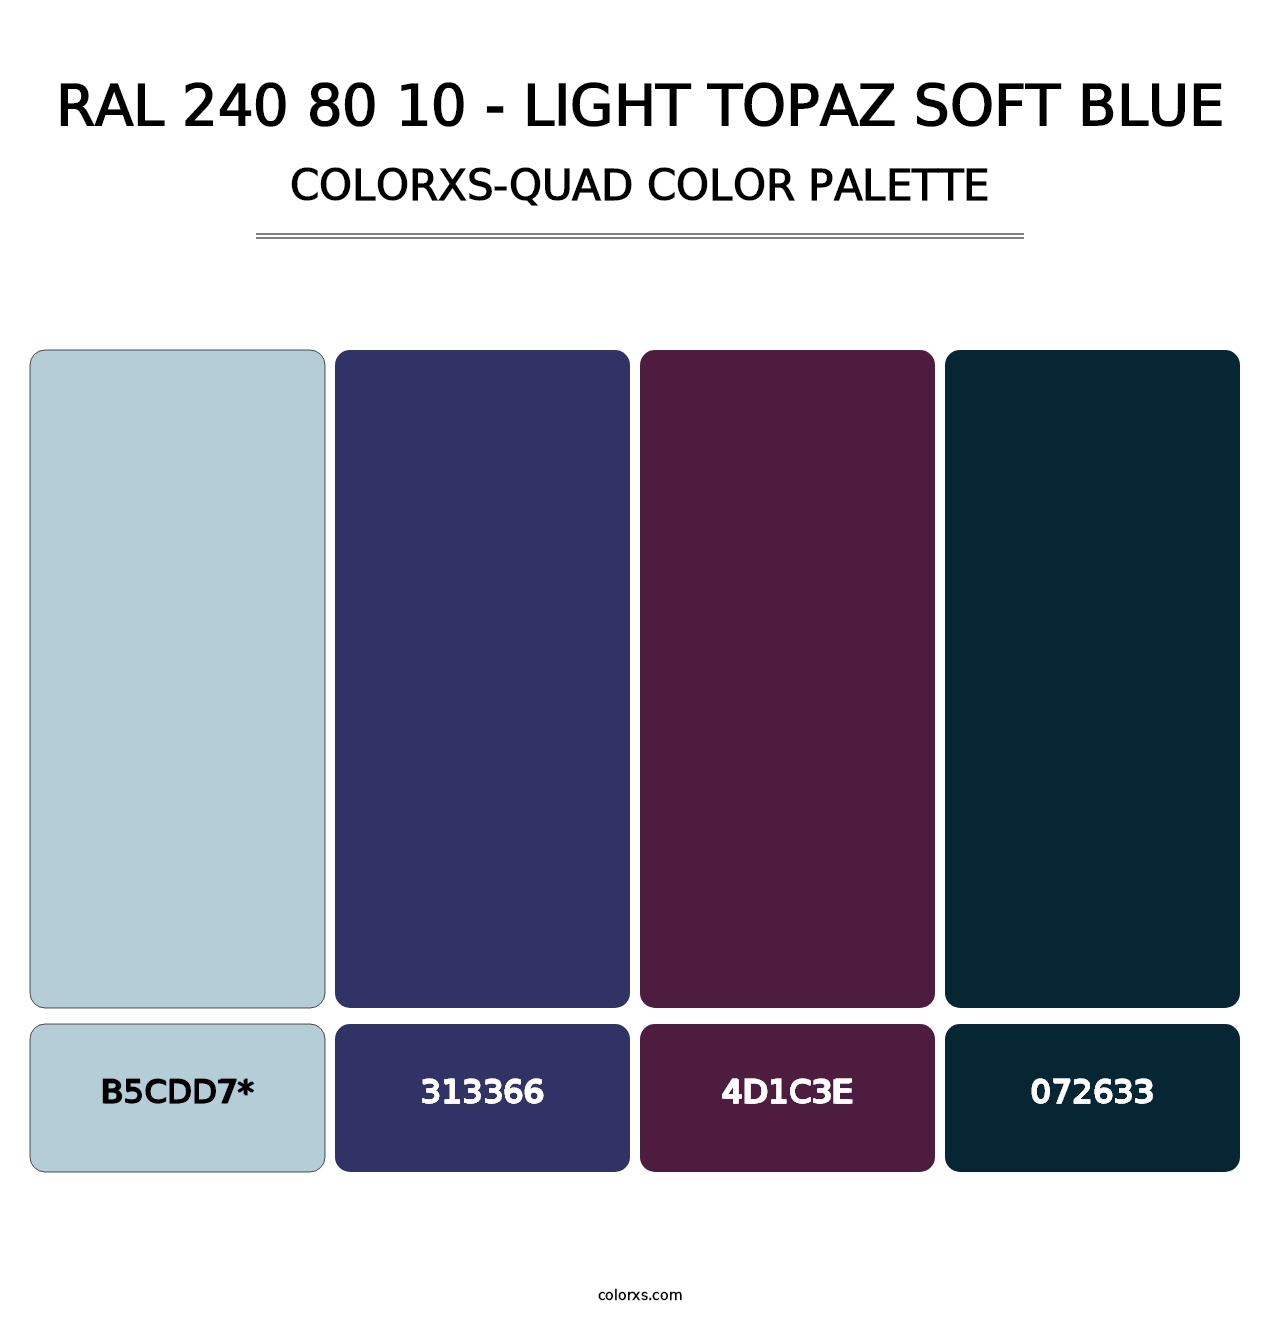 RAL 240 80 10 - Light Topaz Soft Blue - Colorxs Quad Palette